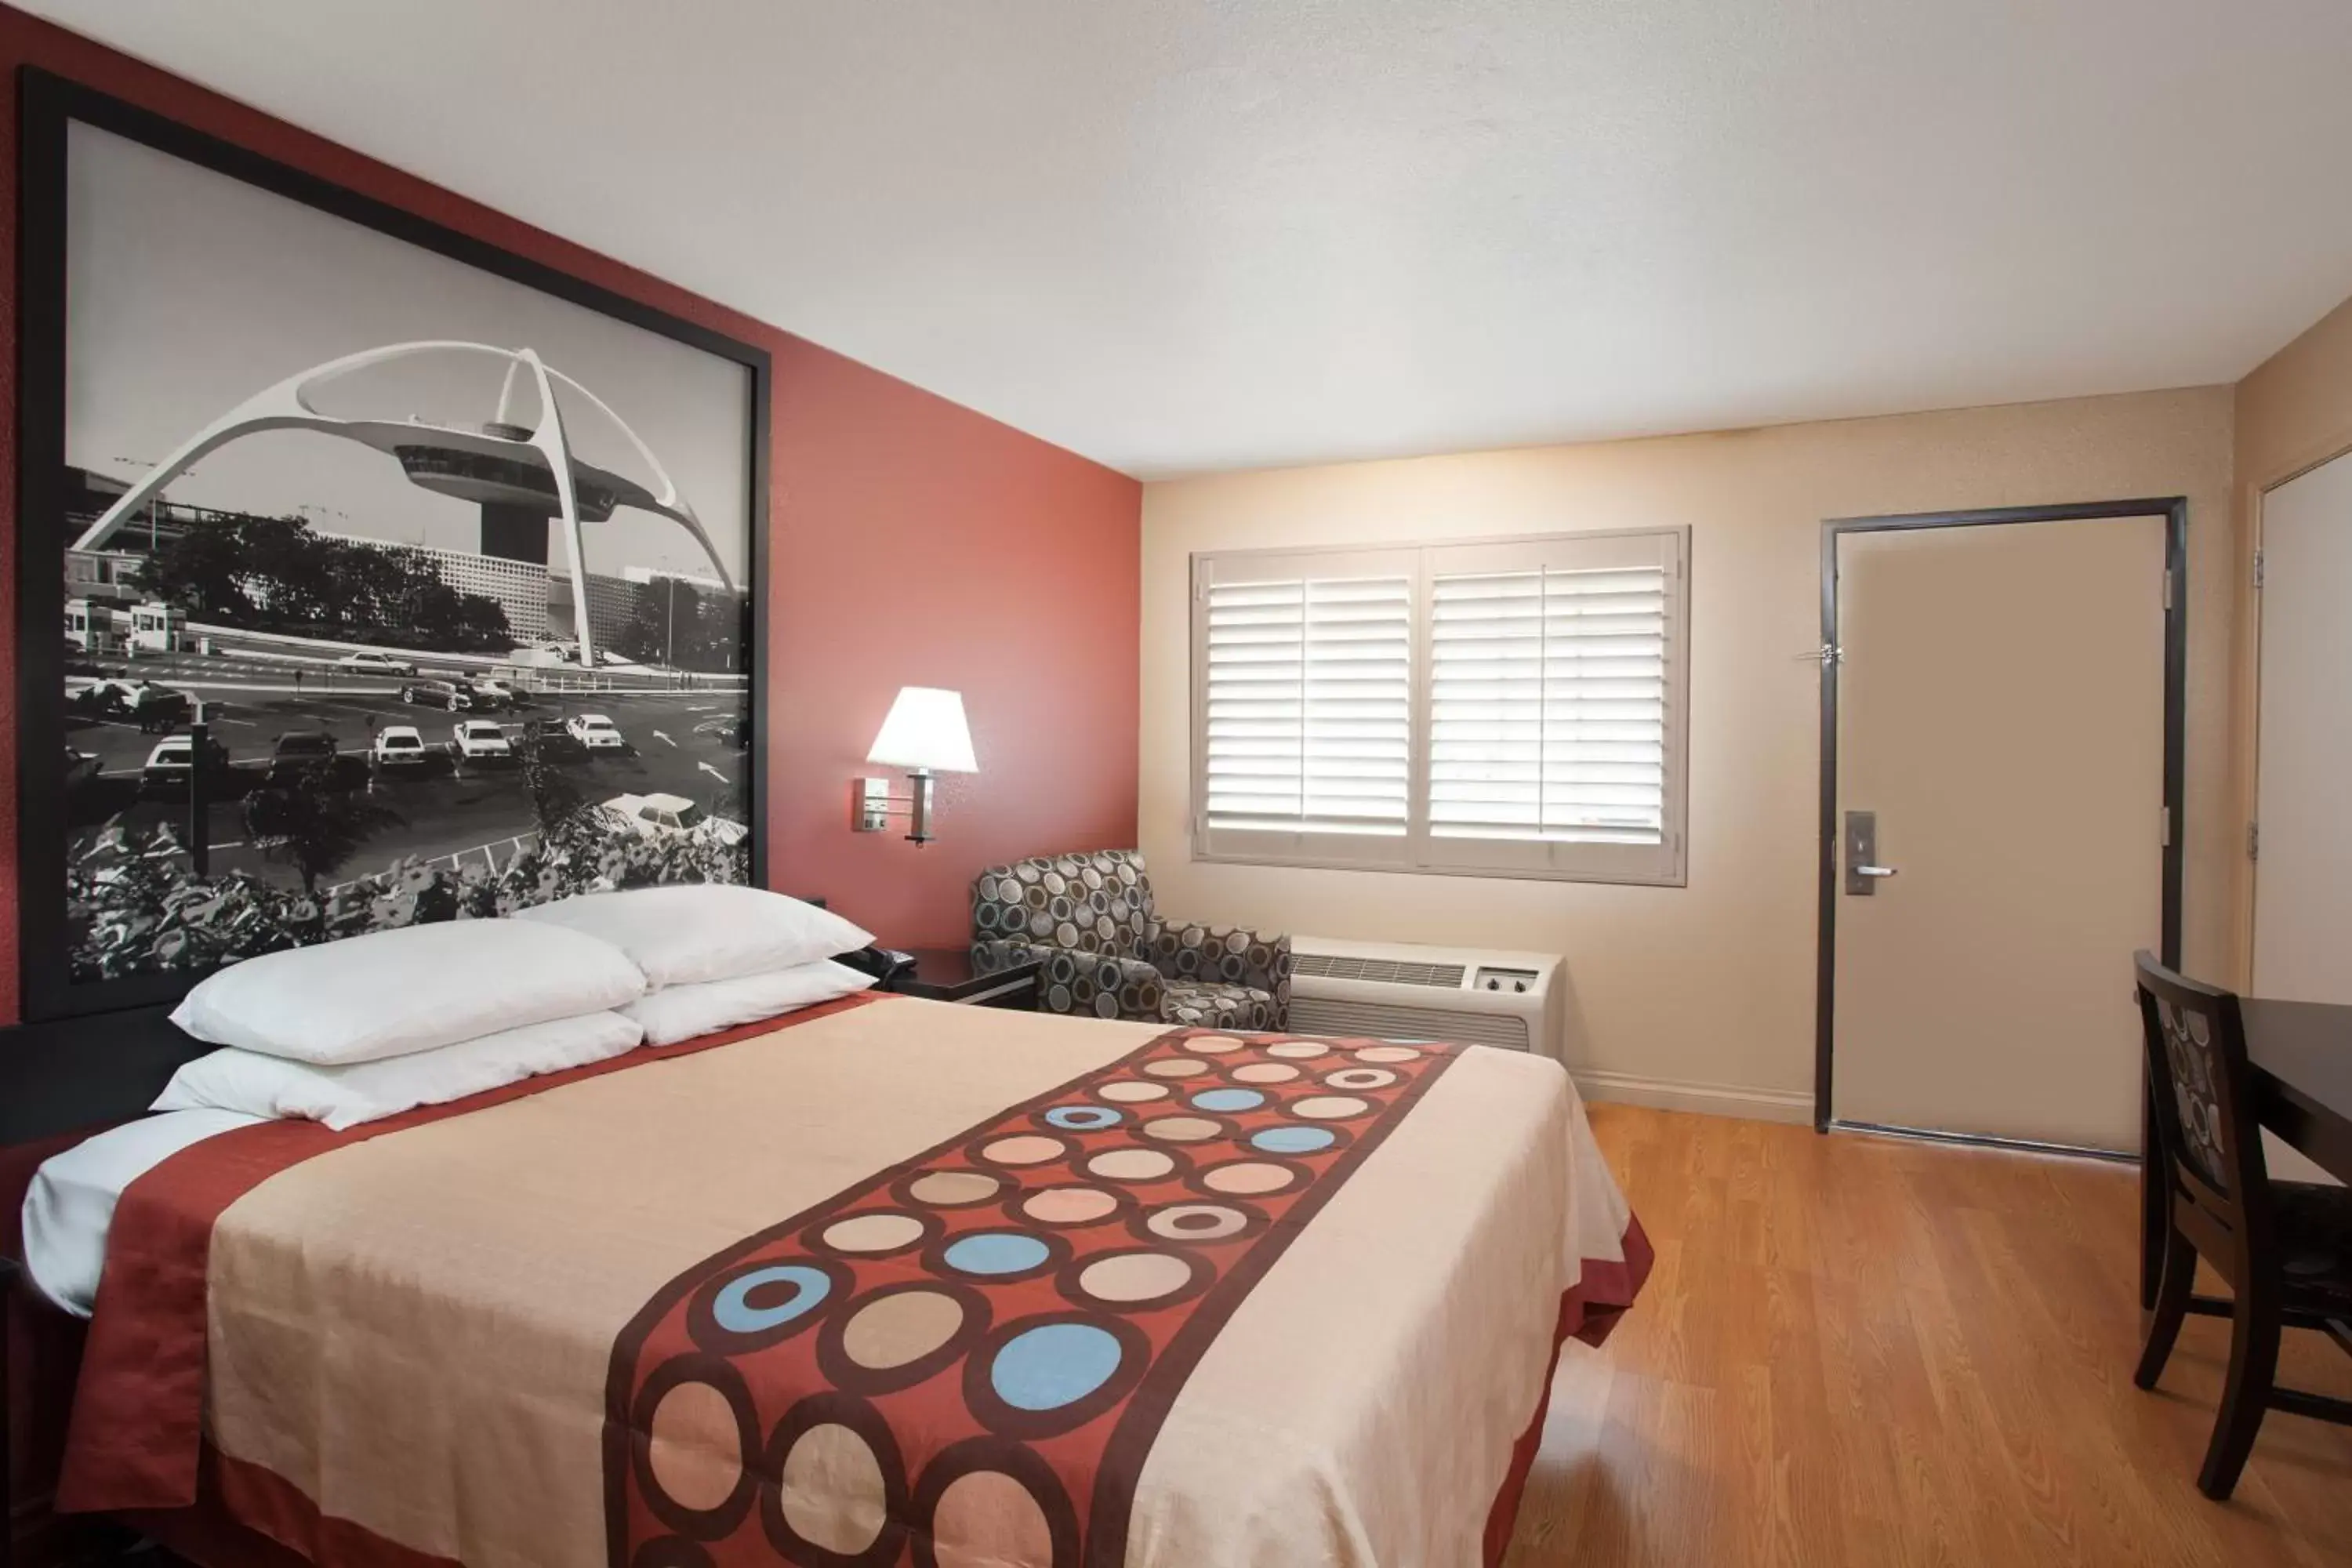 Bed, Room Photo in Super 8 by Wyndham Pasadena/LA Area